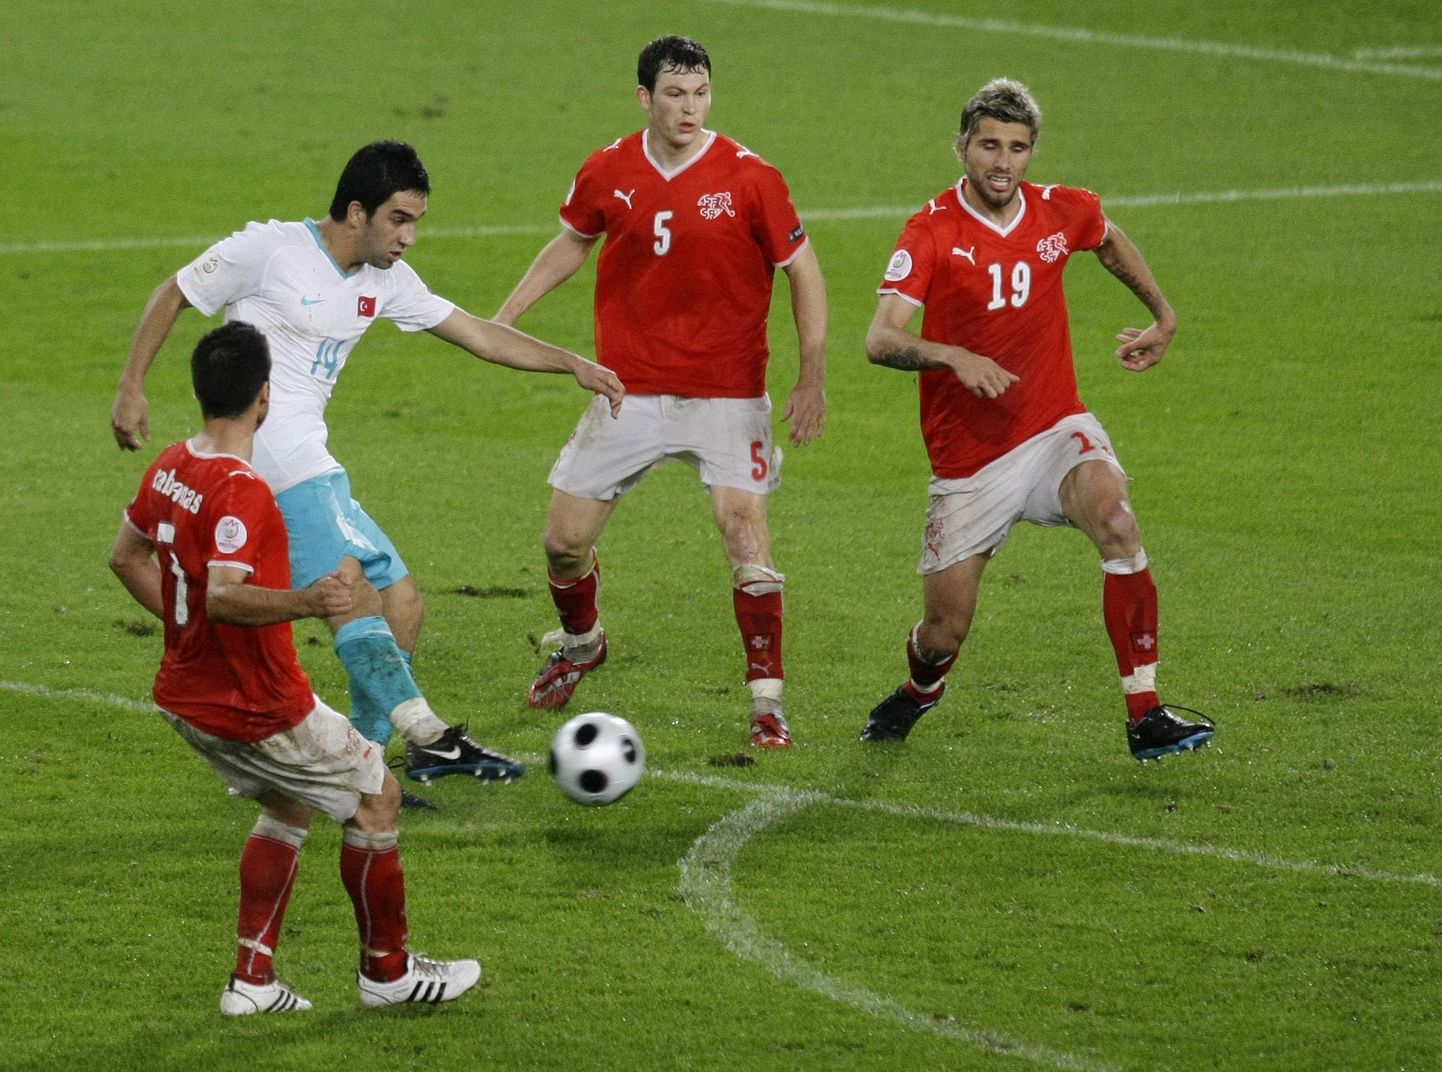 Türklased lõid Šveitsi vastu viigivärava kohtumise viimasel minutil.